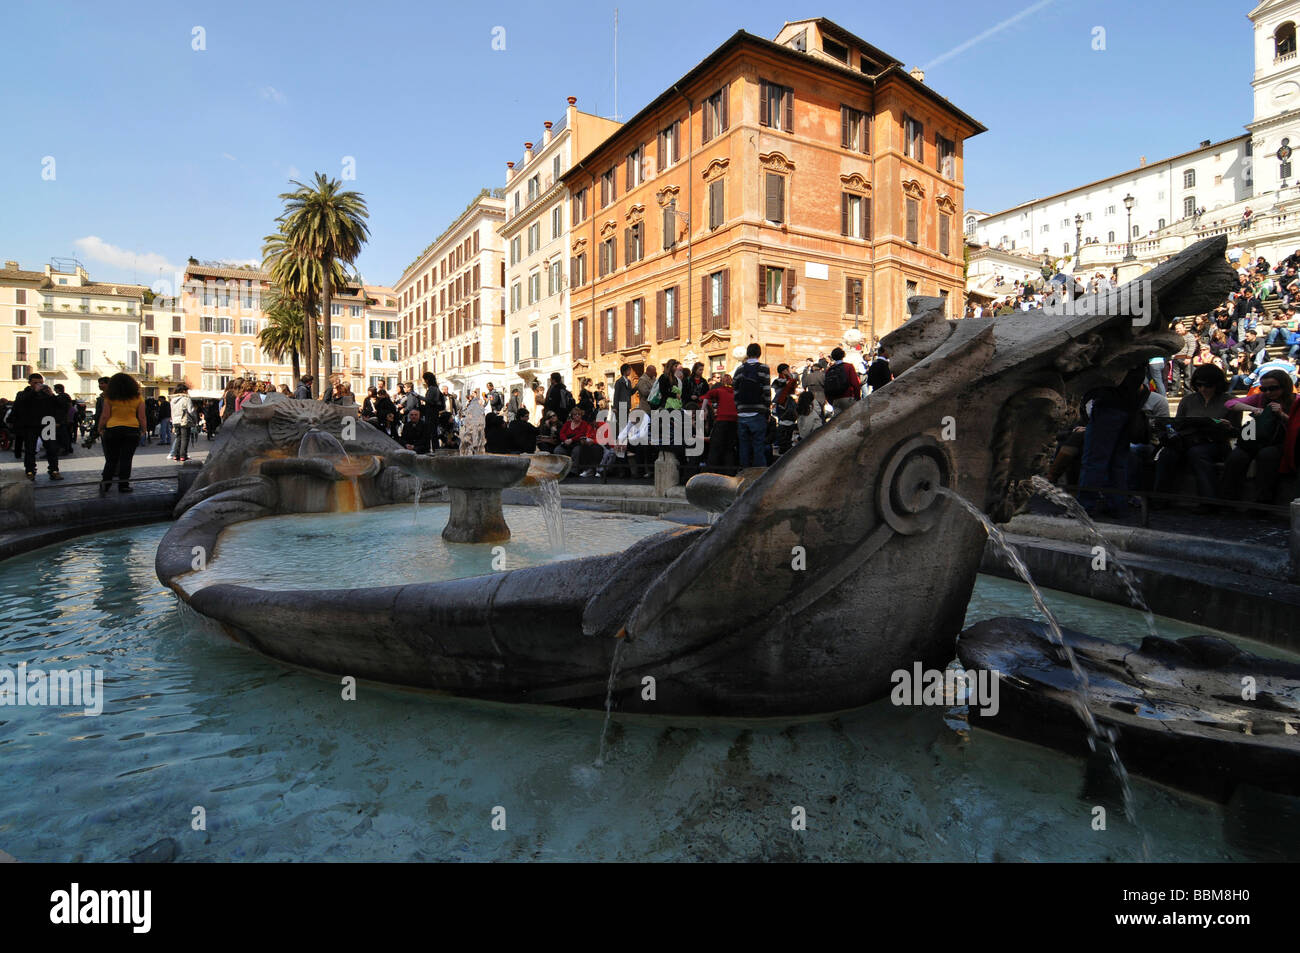 Fountain, Fontana della Barcaccia, Piazza di Spagna Square, historic centre, Rome, Italy Stock Photo